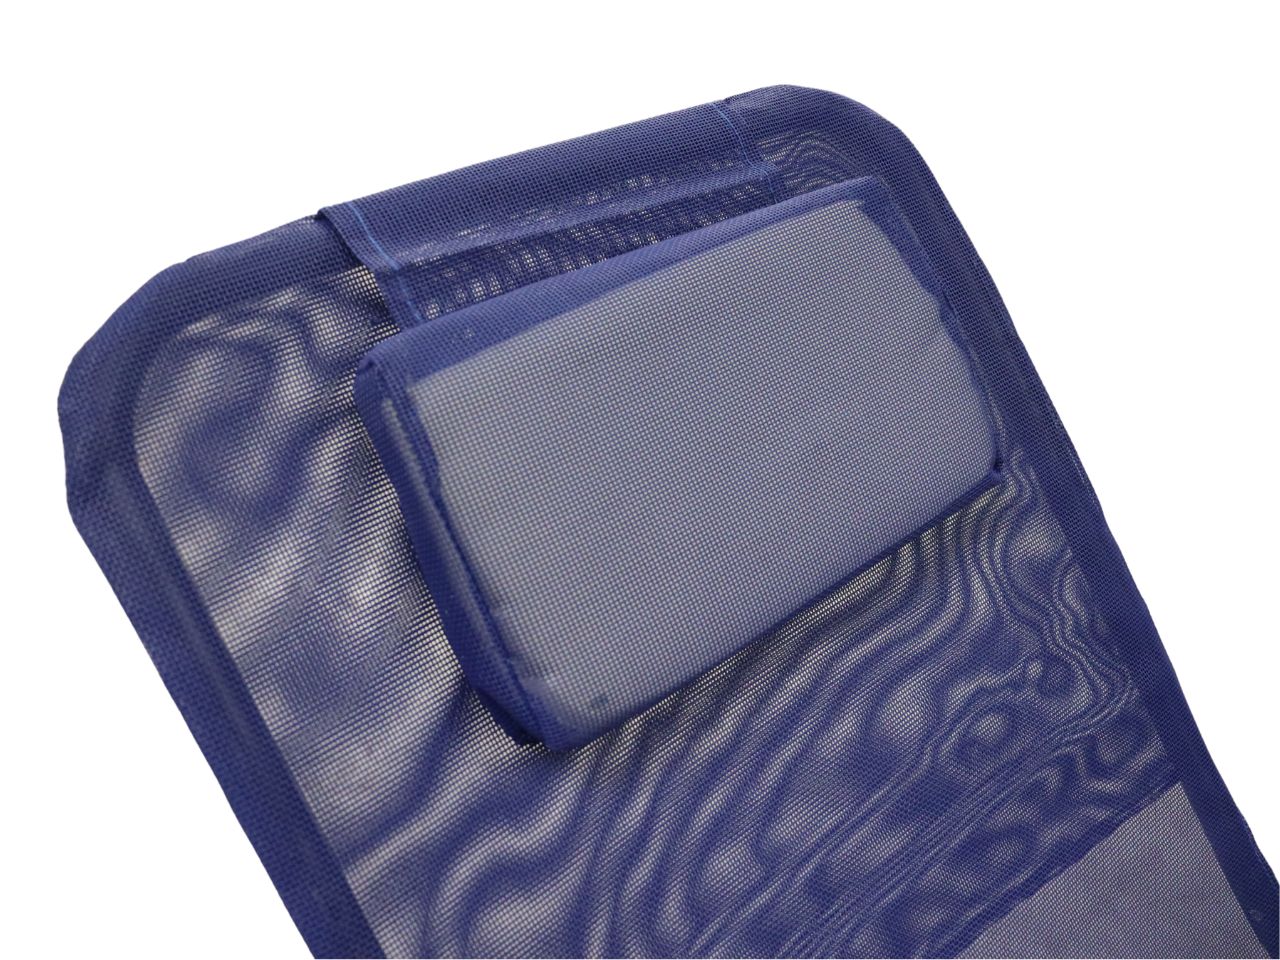 Sdraio reclinabile in acciao e tessuto pvc blu con cuscino, Gravity 6 posizioni regolabili - Metal Far